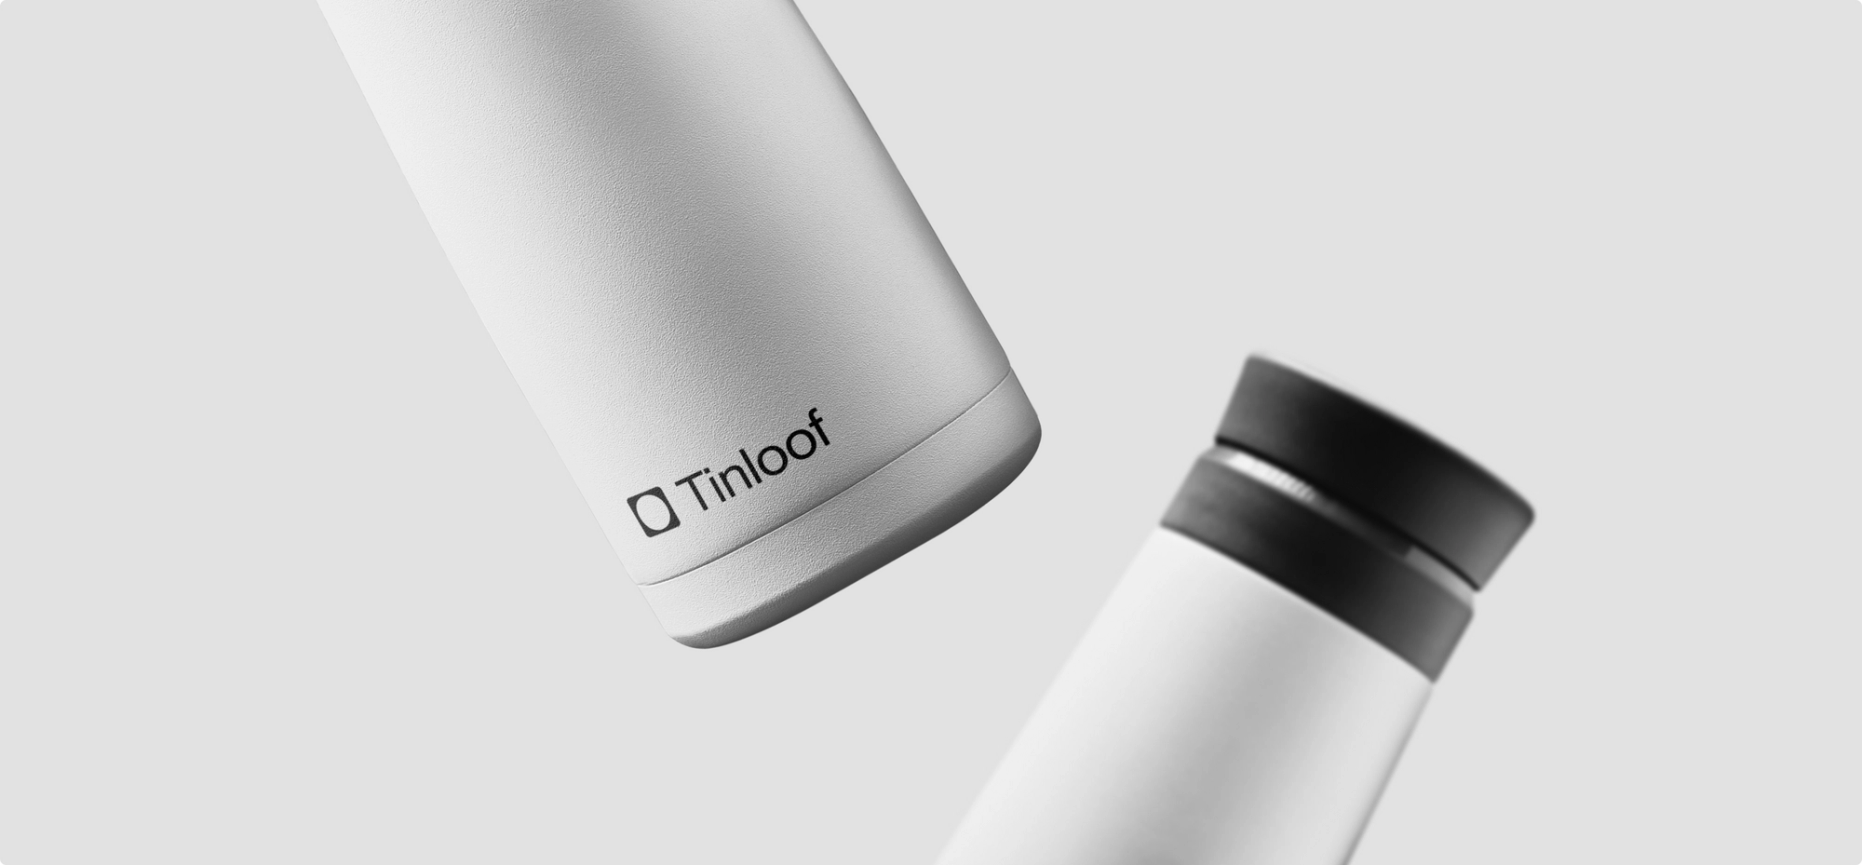 Tinloof store branding